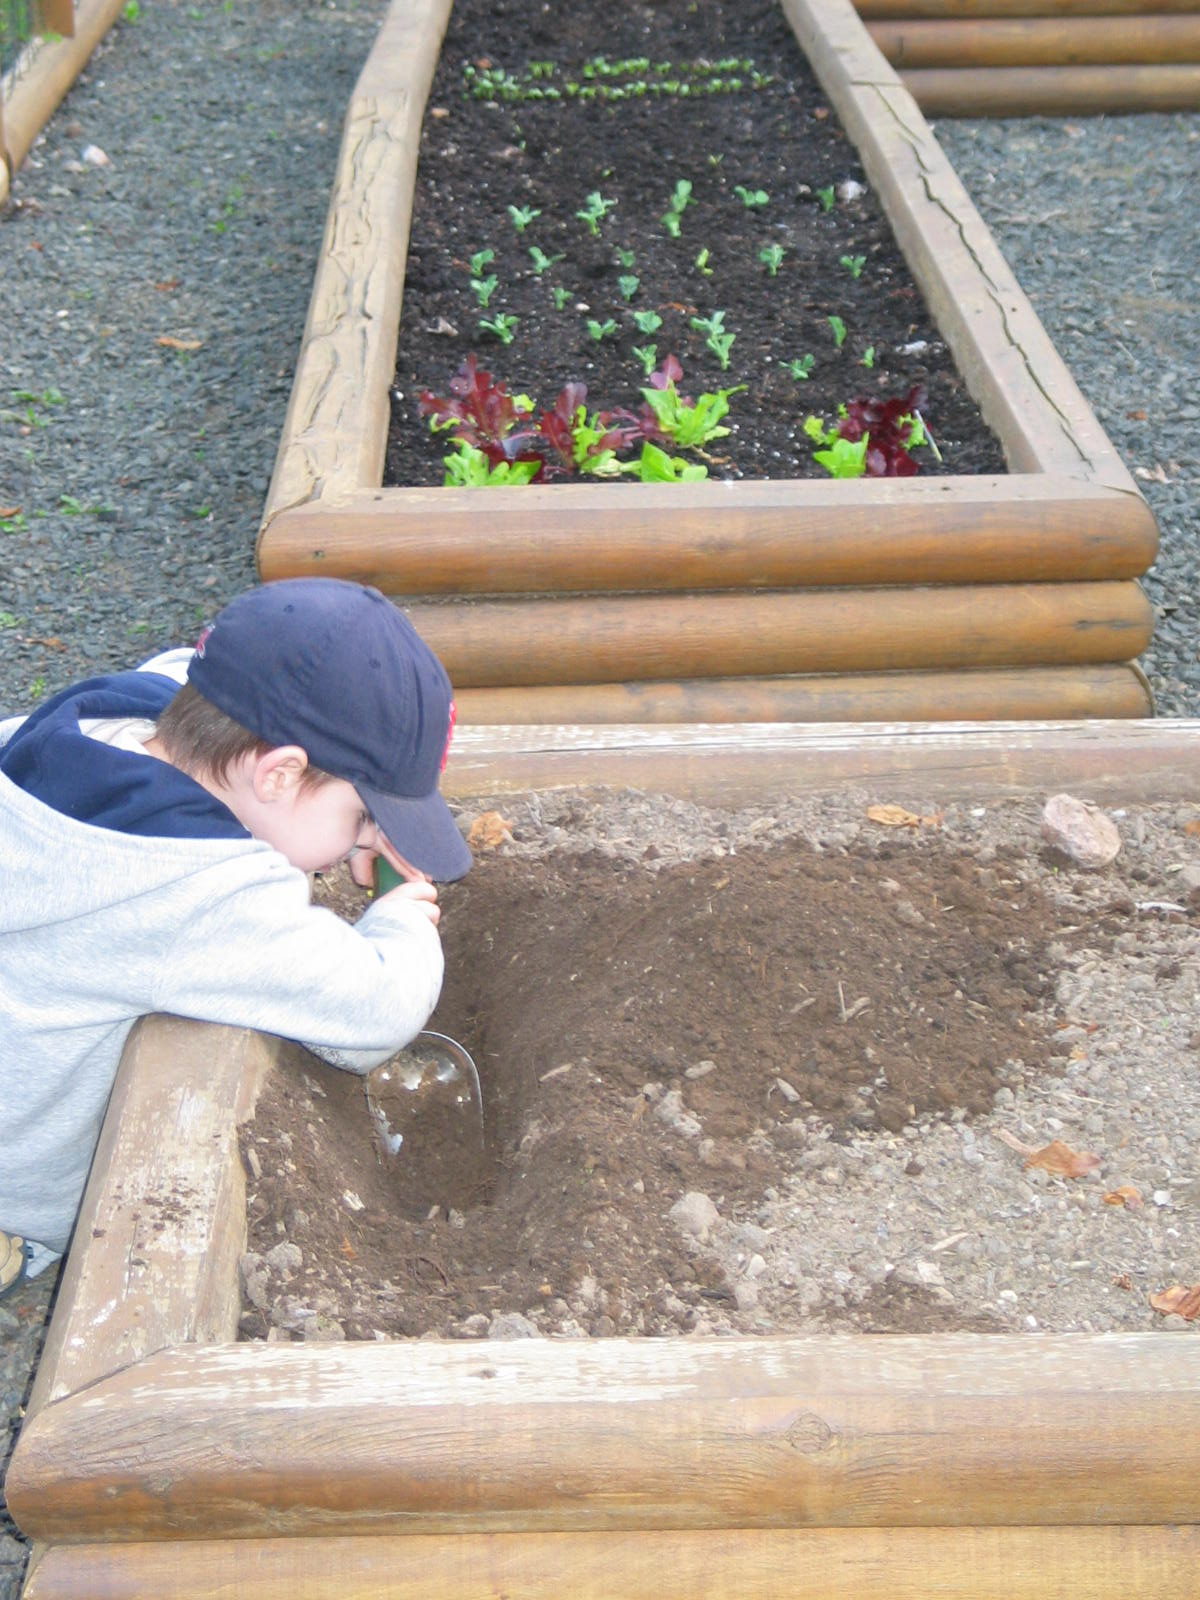 Digging in the vegetable garden